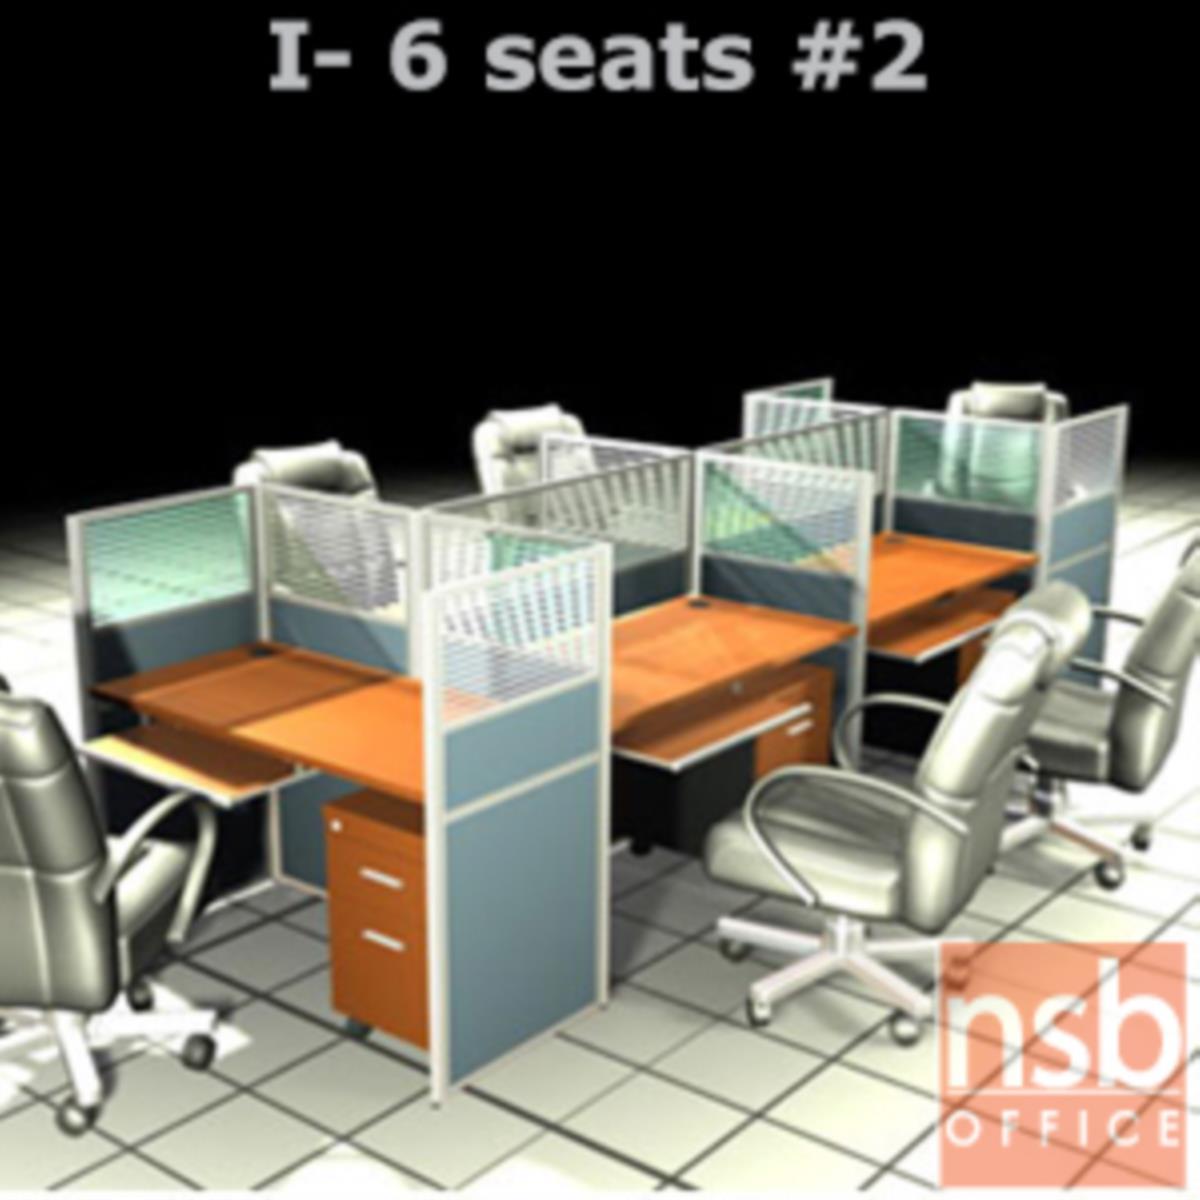 A04A090:ชุดโต๊ะทำงานกลุ่ม 6 ที่นั่ง   ขนาดรวม 366W*126D cm. พร้อมพาร์ทิชั่นครึ่งกระจกขัดลาย